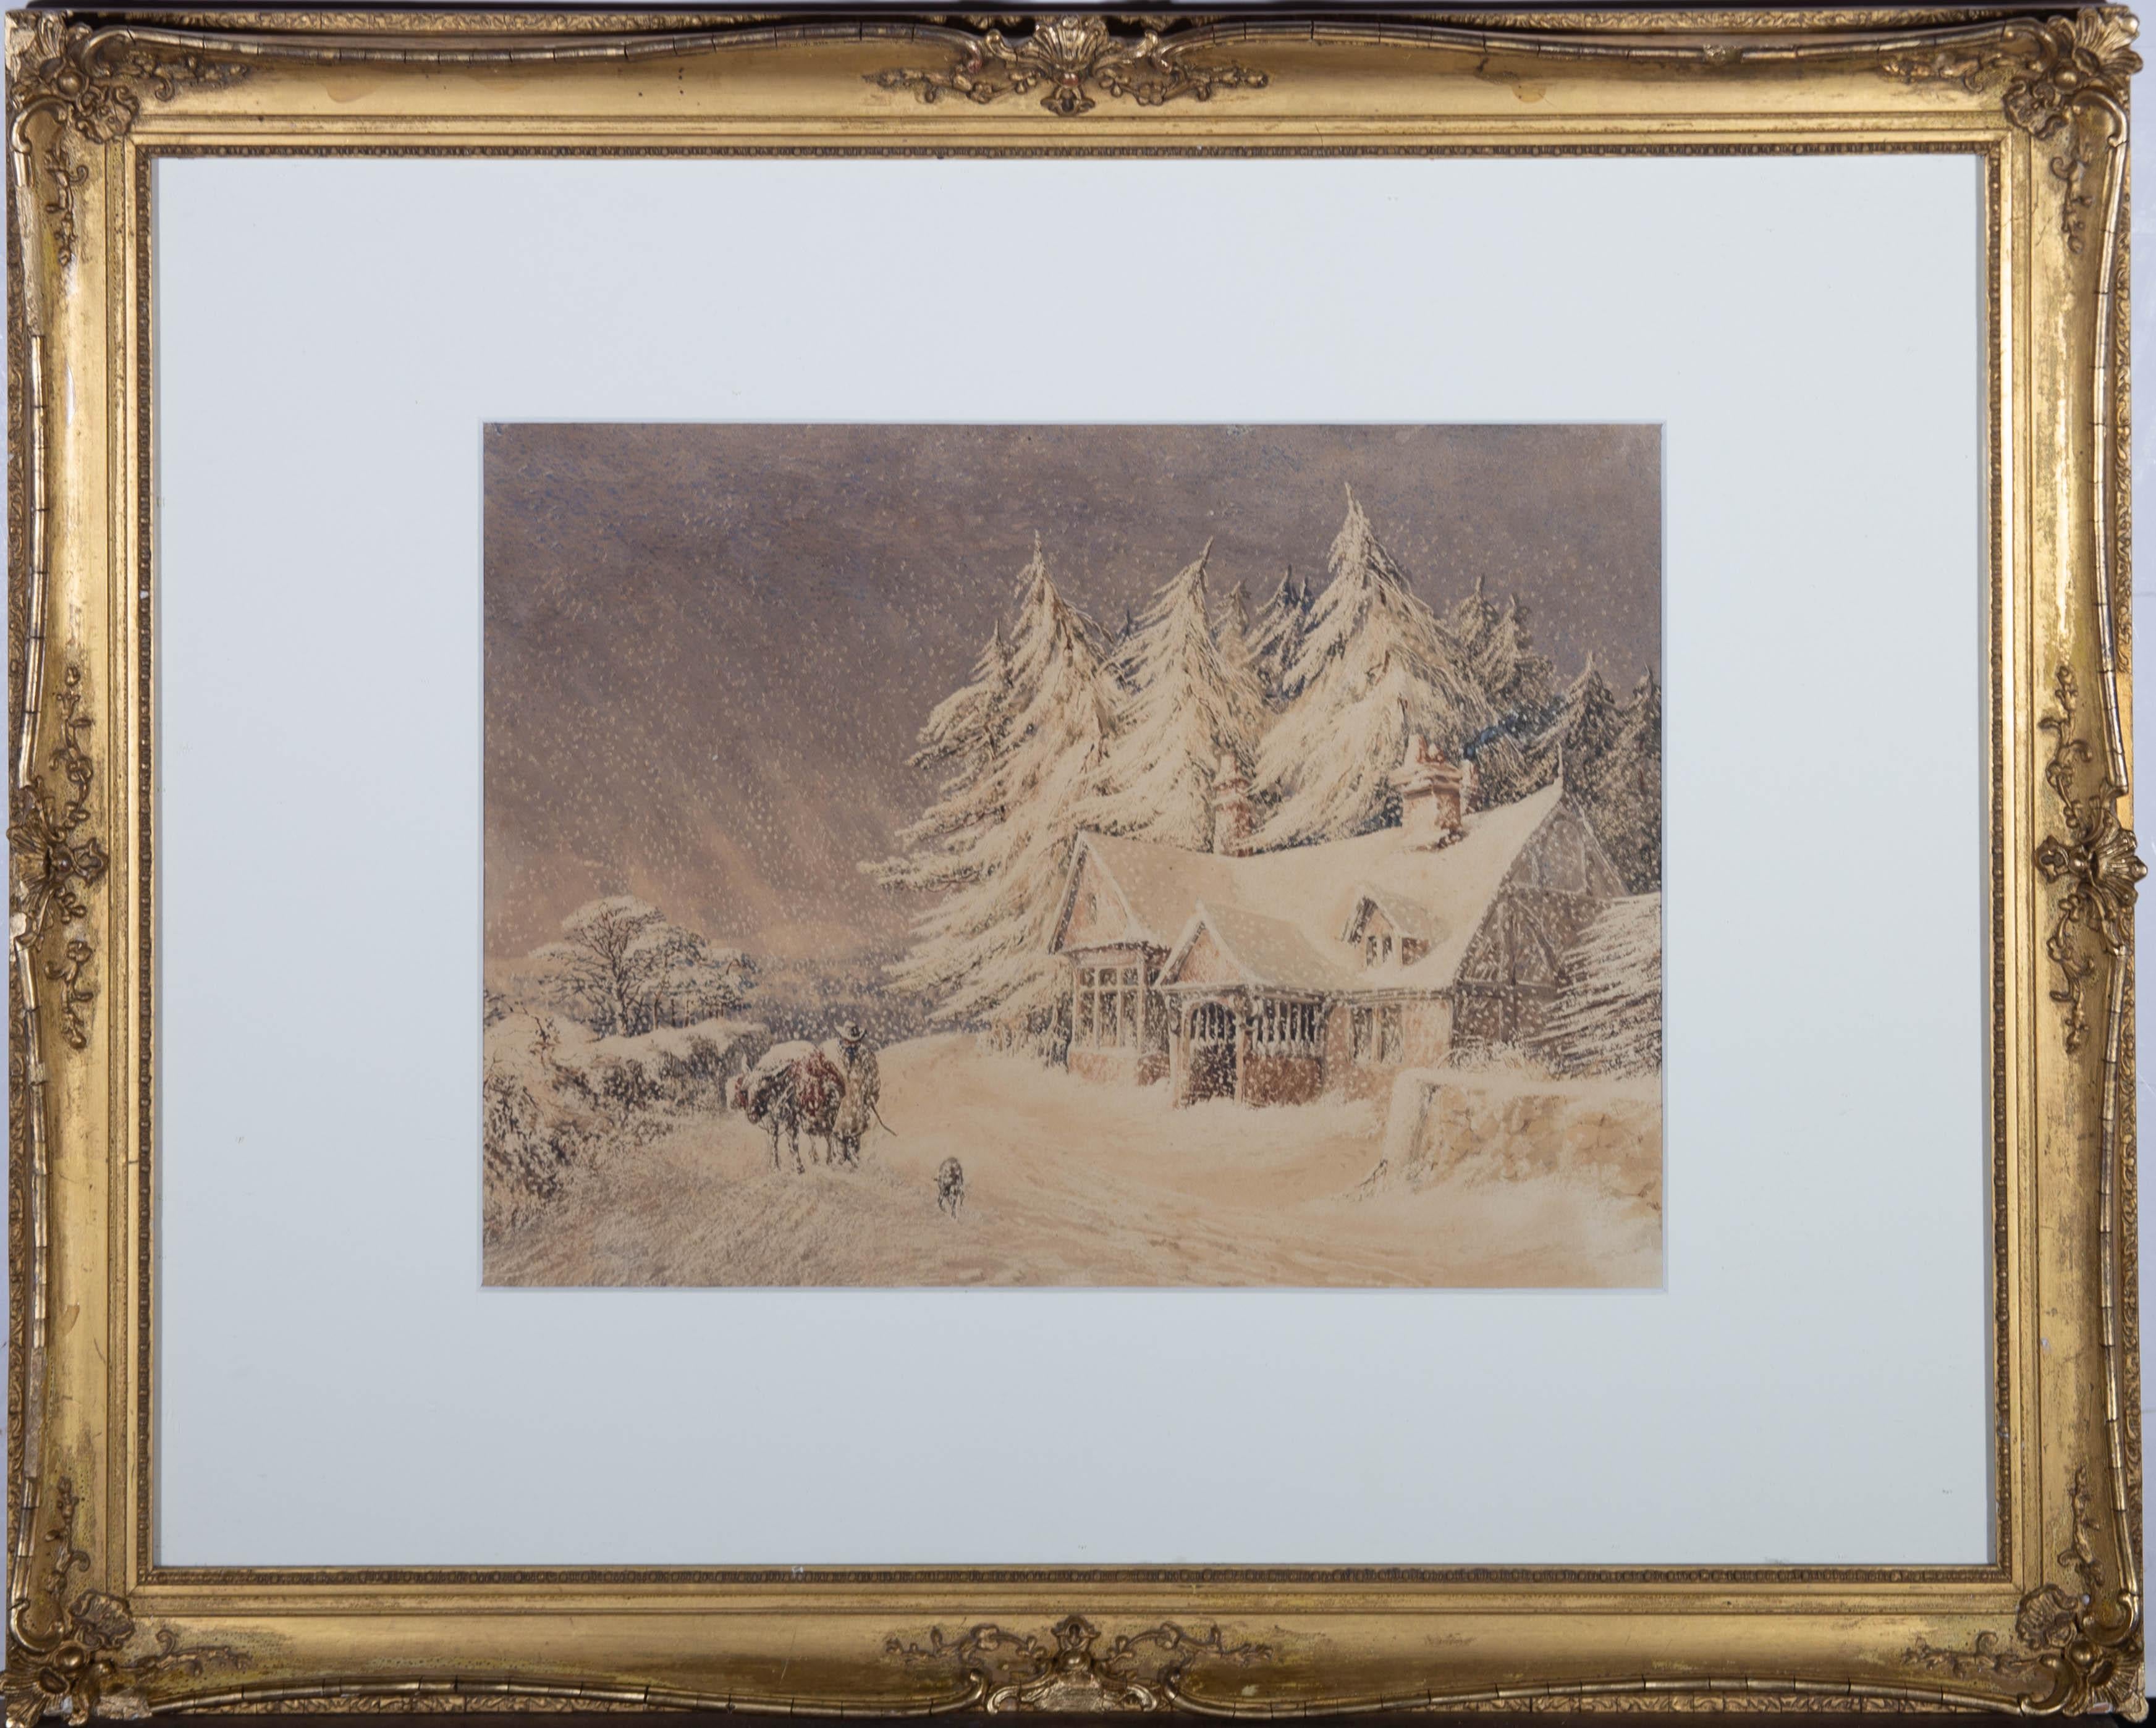 Unknown Landscape Art - 1860 Watercolour - Snowstorm